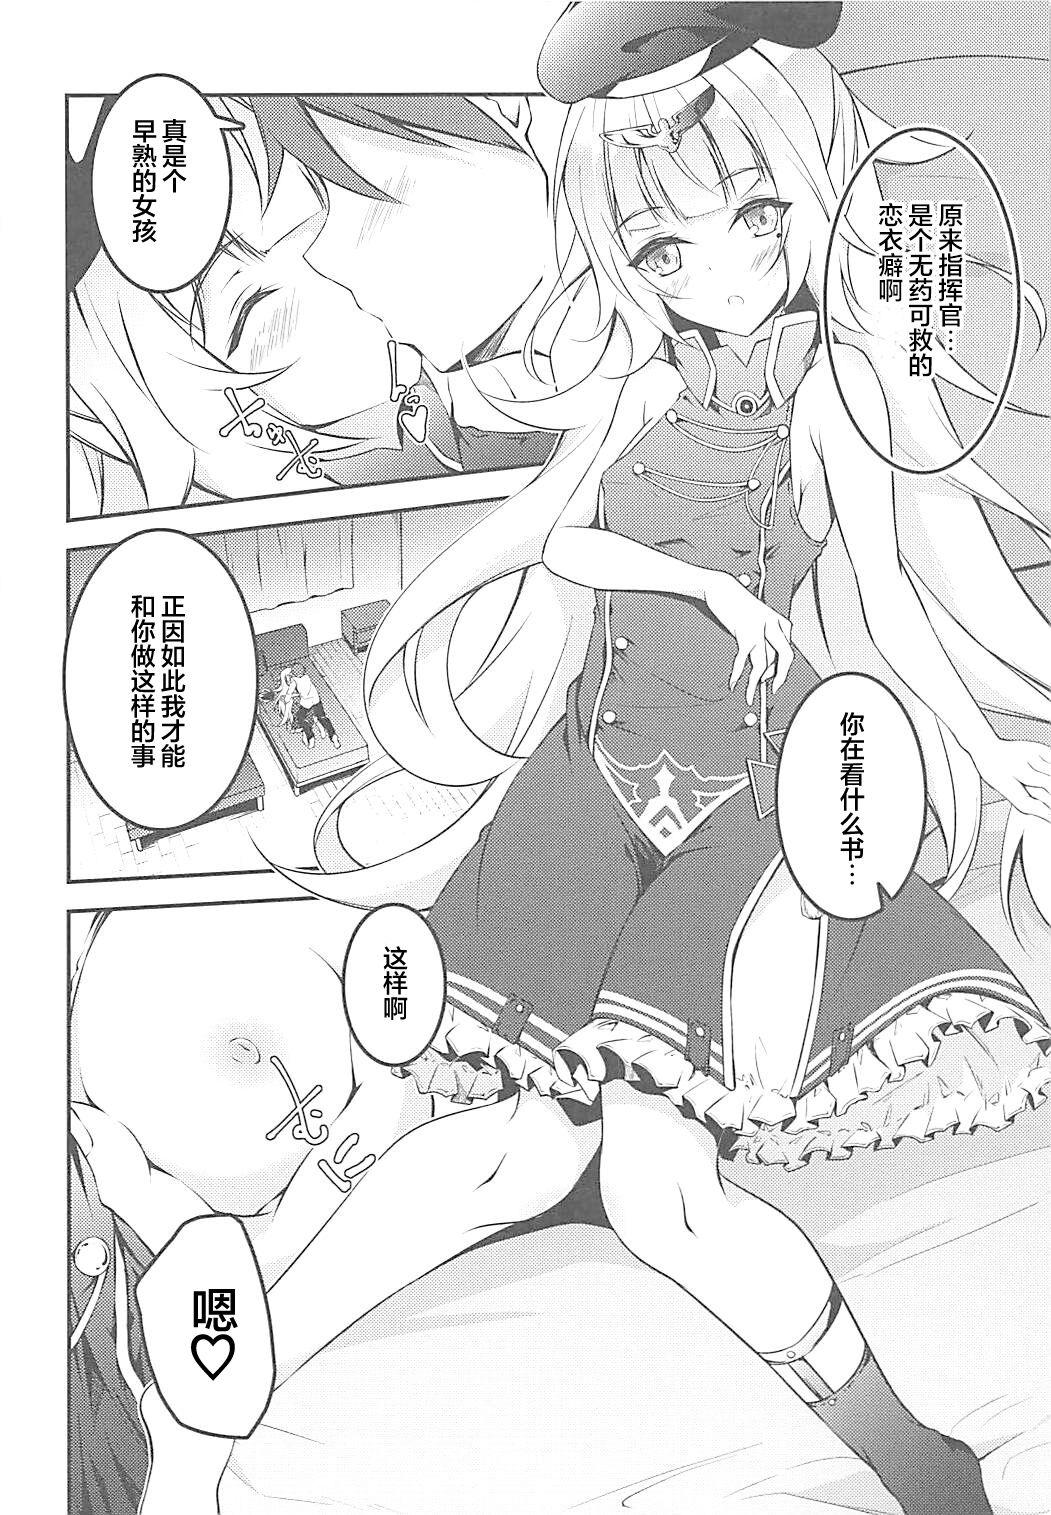 Massage Sex Anata Iro no Shiraito - Azur lane Dress - Page 6